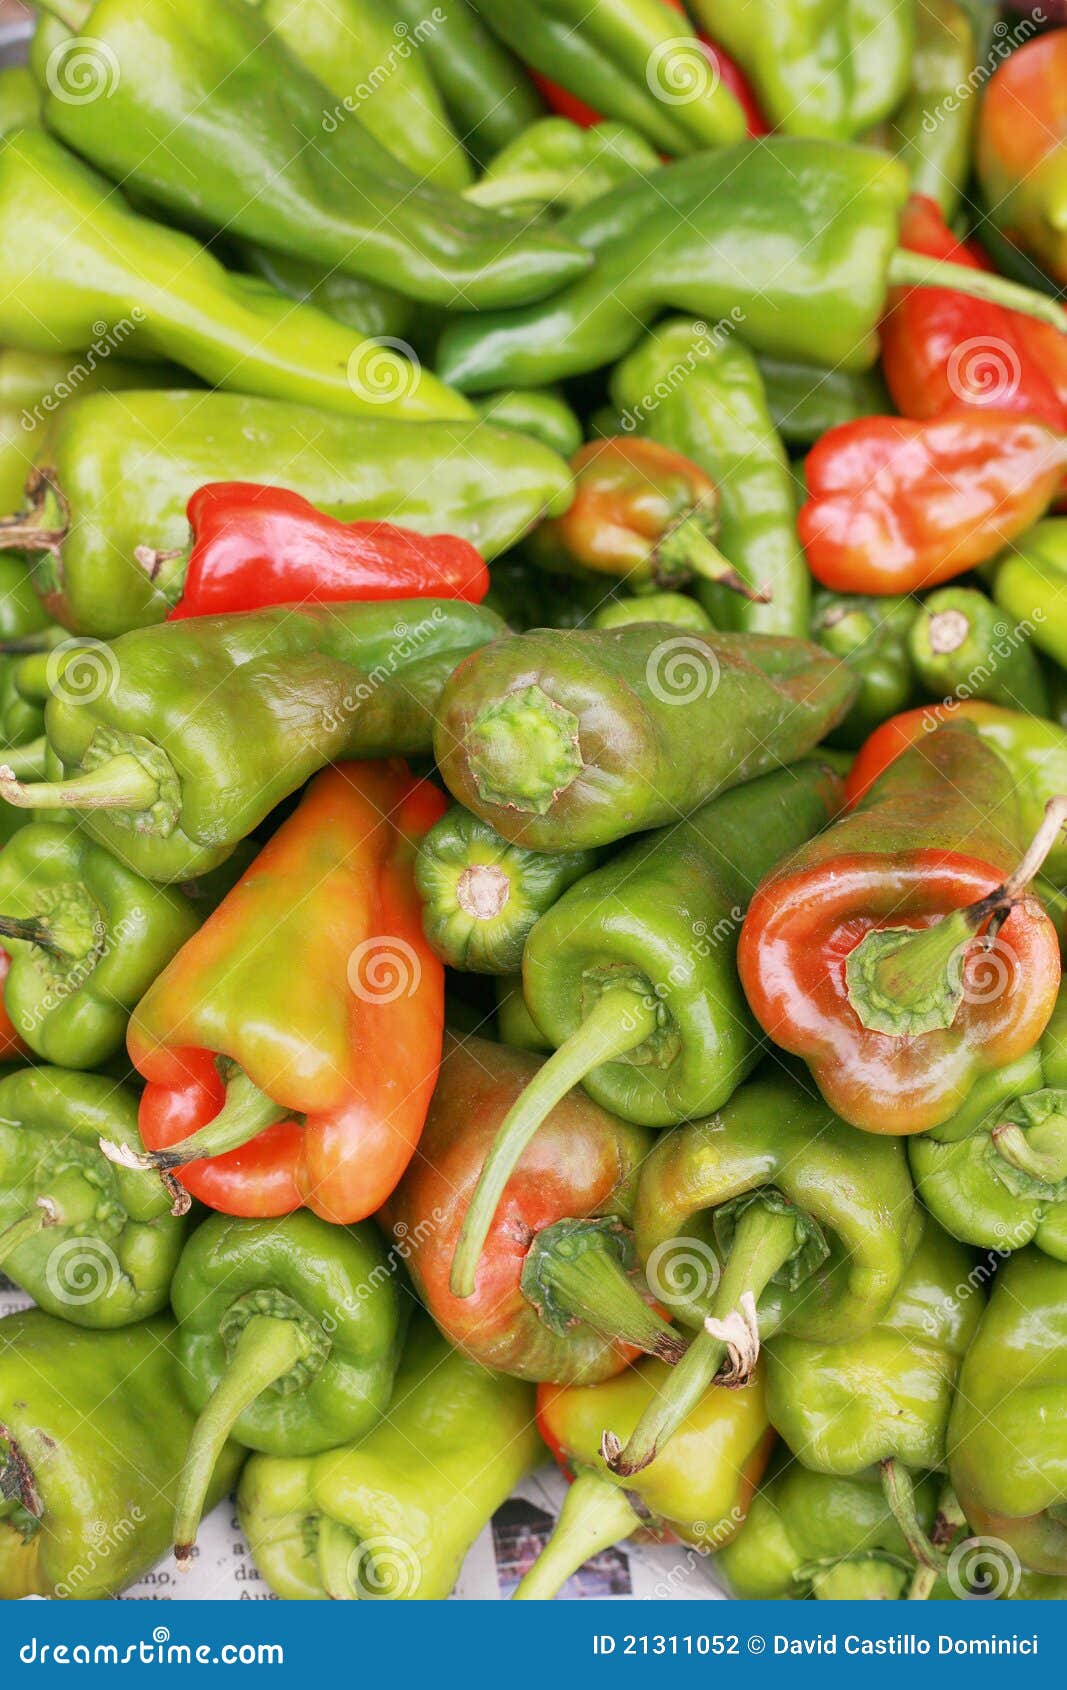 bell peppers, capsicum annuum.